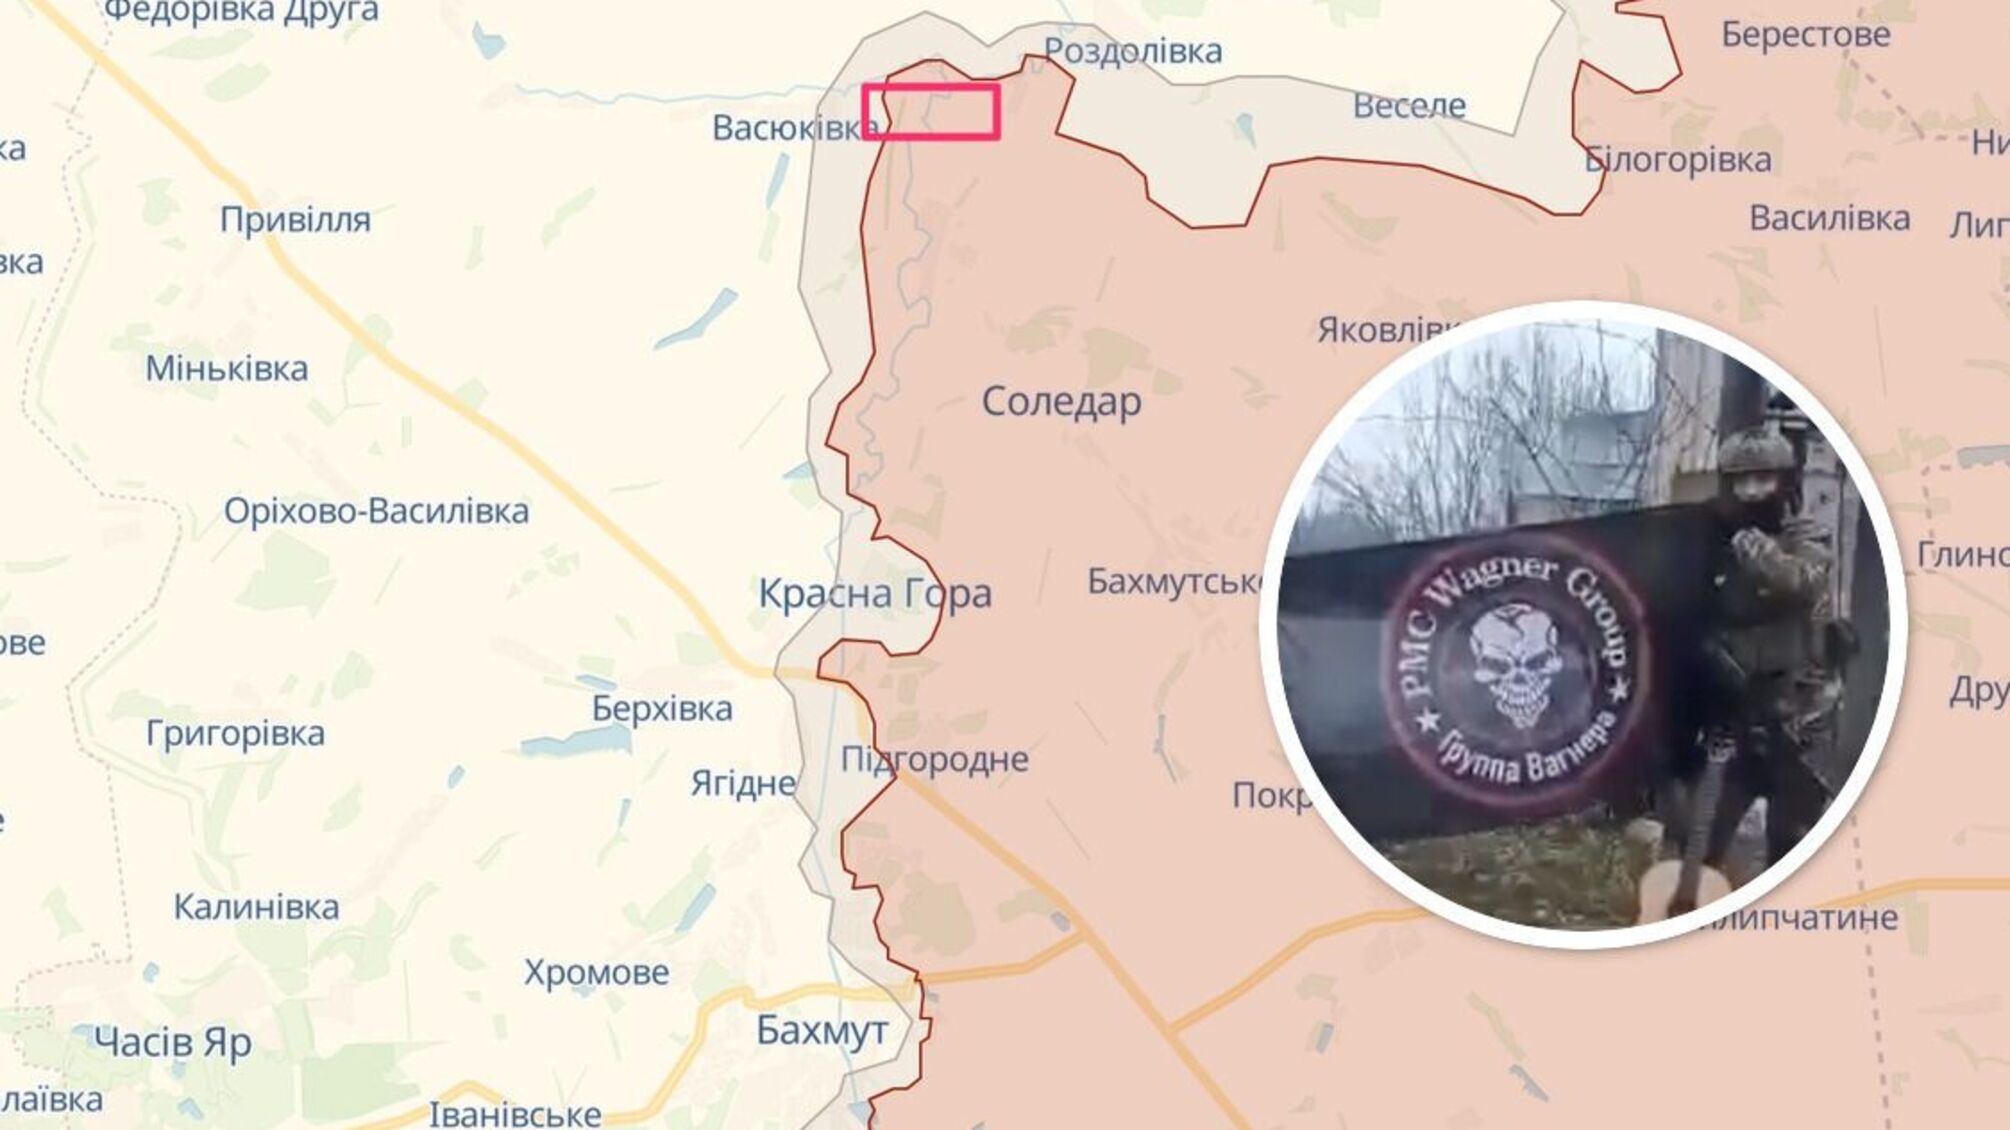 'Вагнерівці' просунулись у районі Соледару: захопили село на 30 будинків, – DeepState (відео)